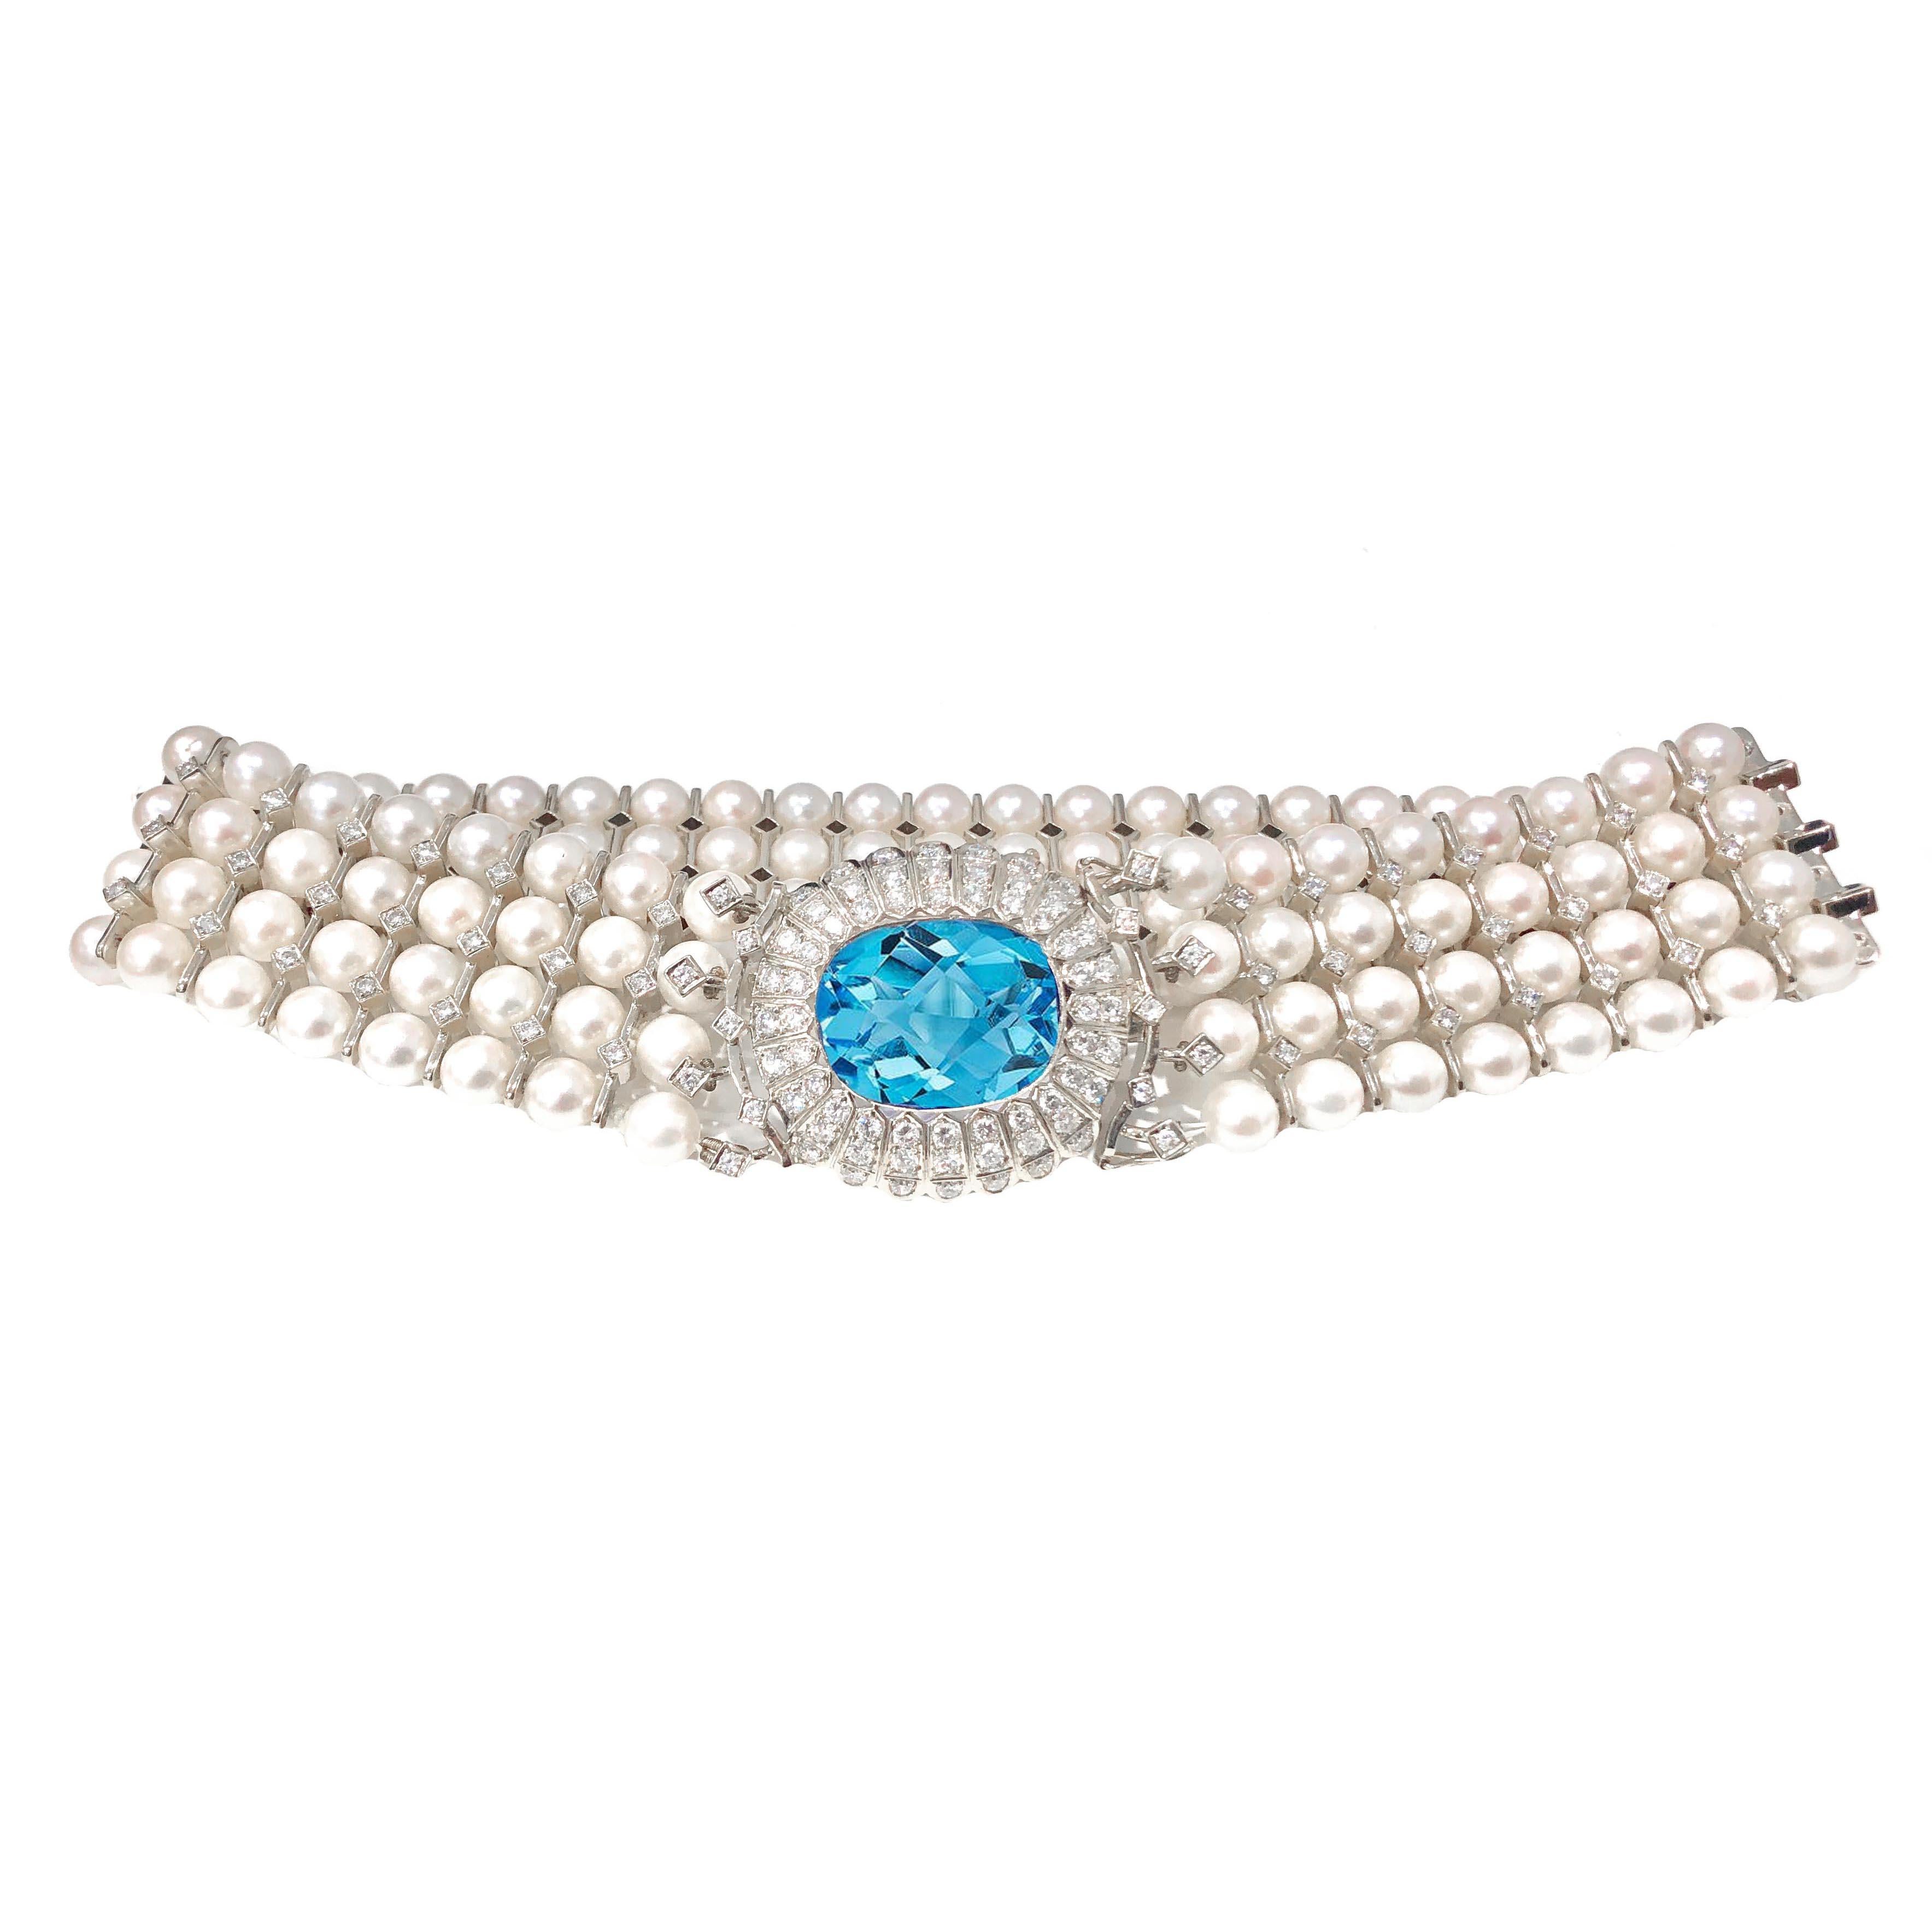 Art Deco, 18 Karat Weißgold, Perle, Blautopas und Diamant, Halskette und Armband. Die Halskette hat ein geschätztes Gesamtgewicht von 7,00 Karat in Diamanten, 20,00 + Karat natürlichen blauen Topas Zentrum und 152 echte Perlen.
Das Armband hat eine